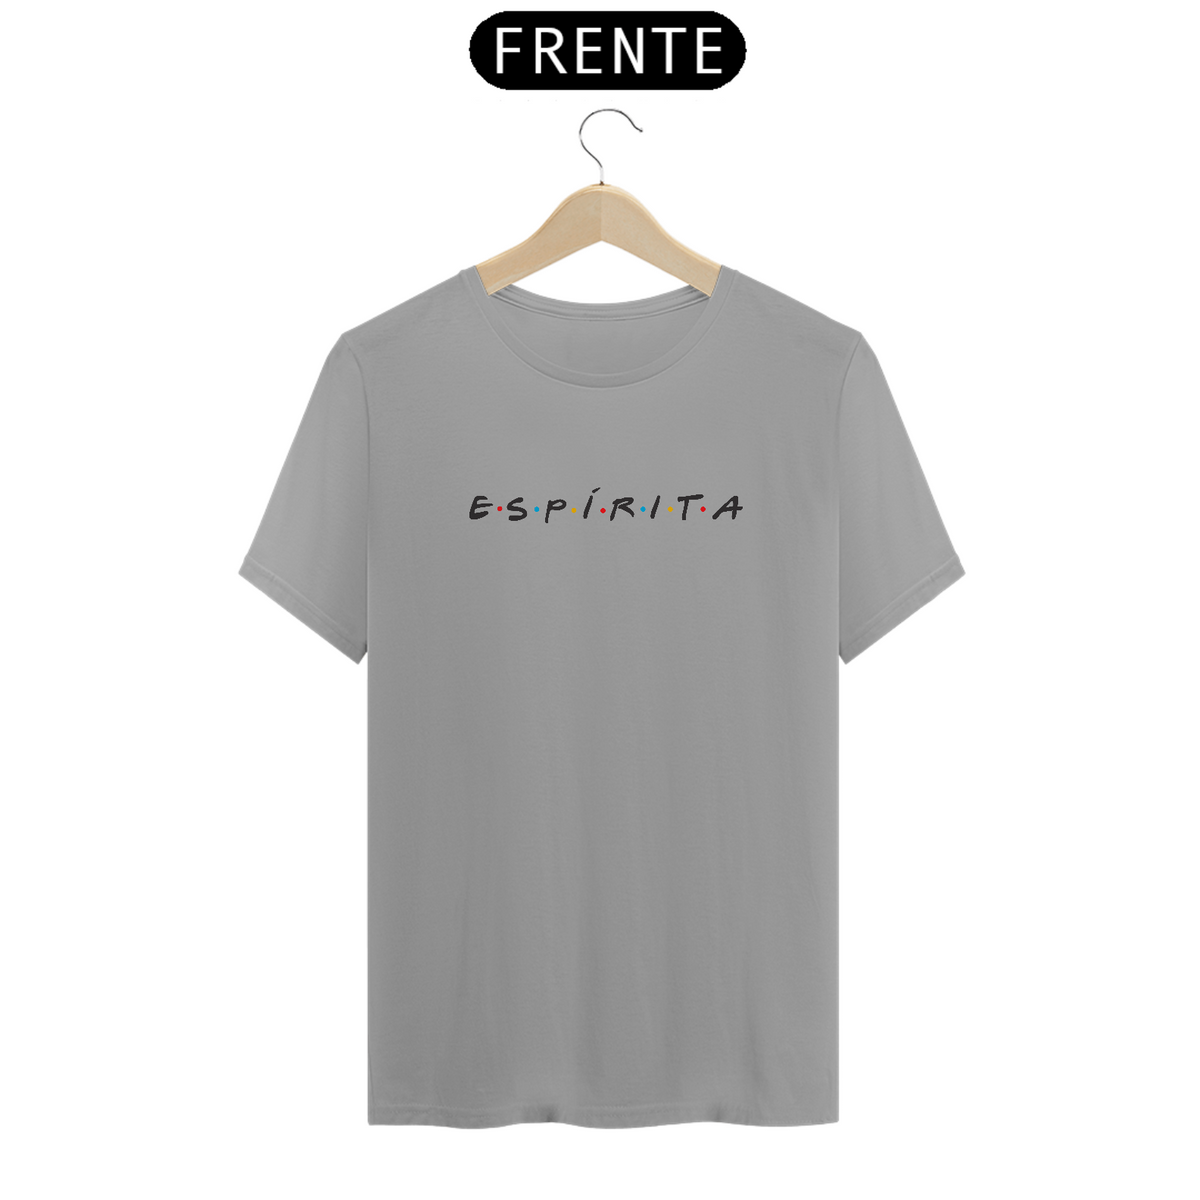 Nome do produto: Camiseta Friends Espírita